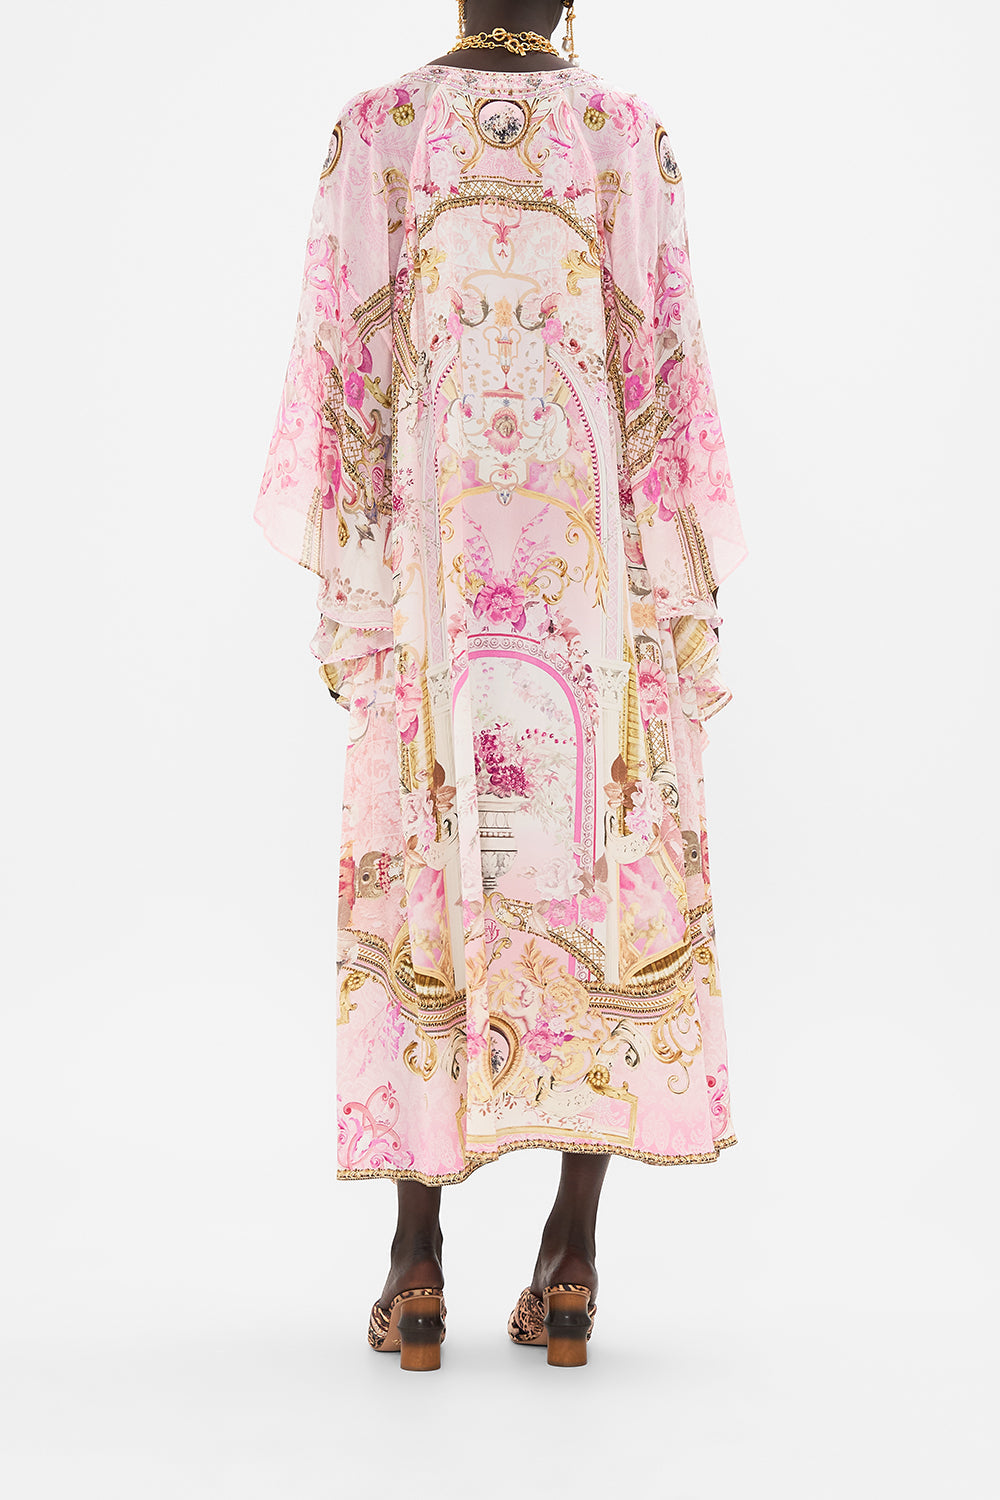 Back view of model wearing CAMILLA pink silk kaftan in Fresco Fairytale print